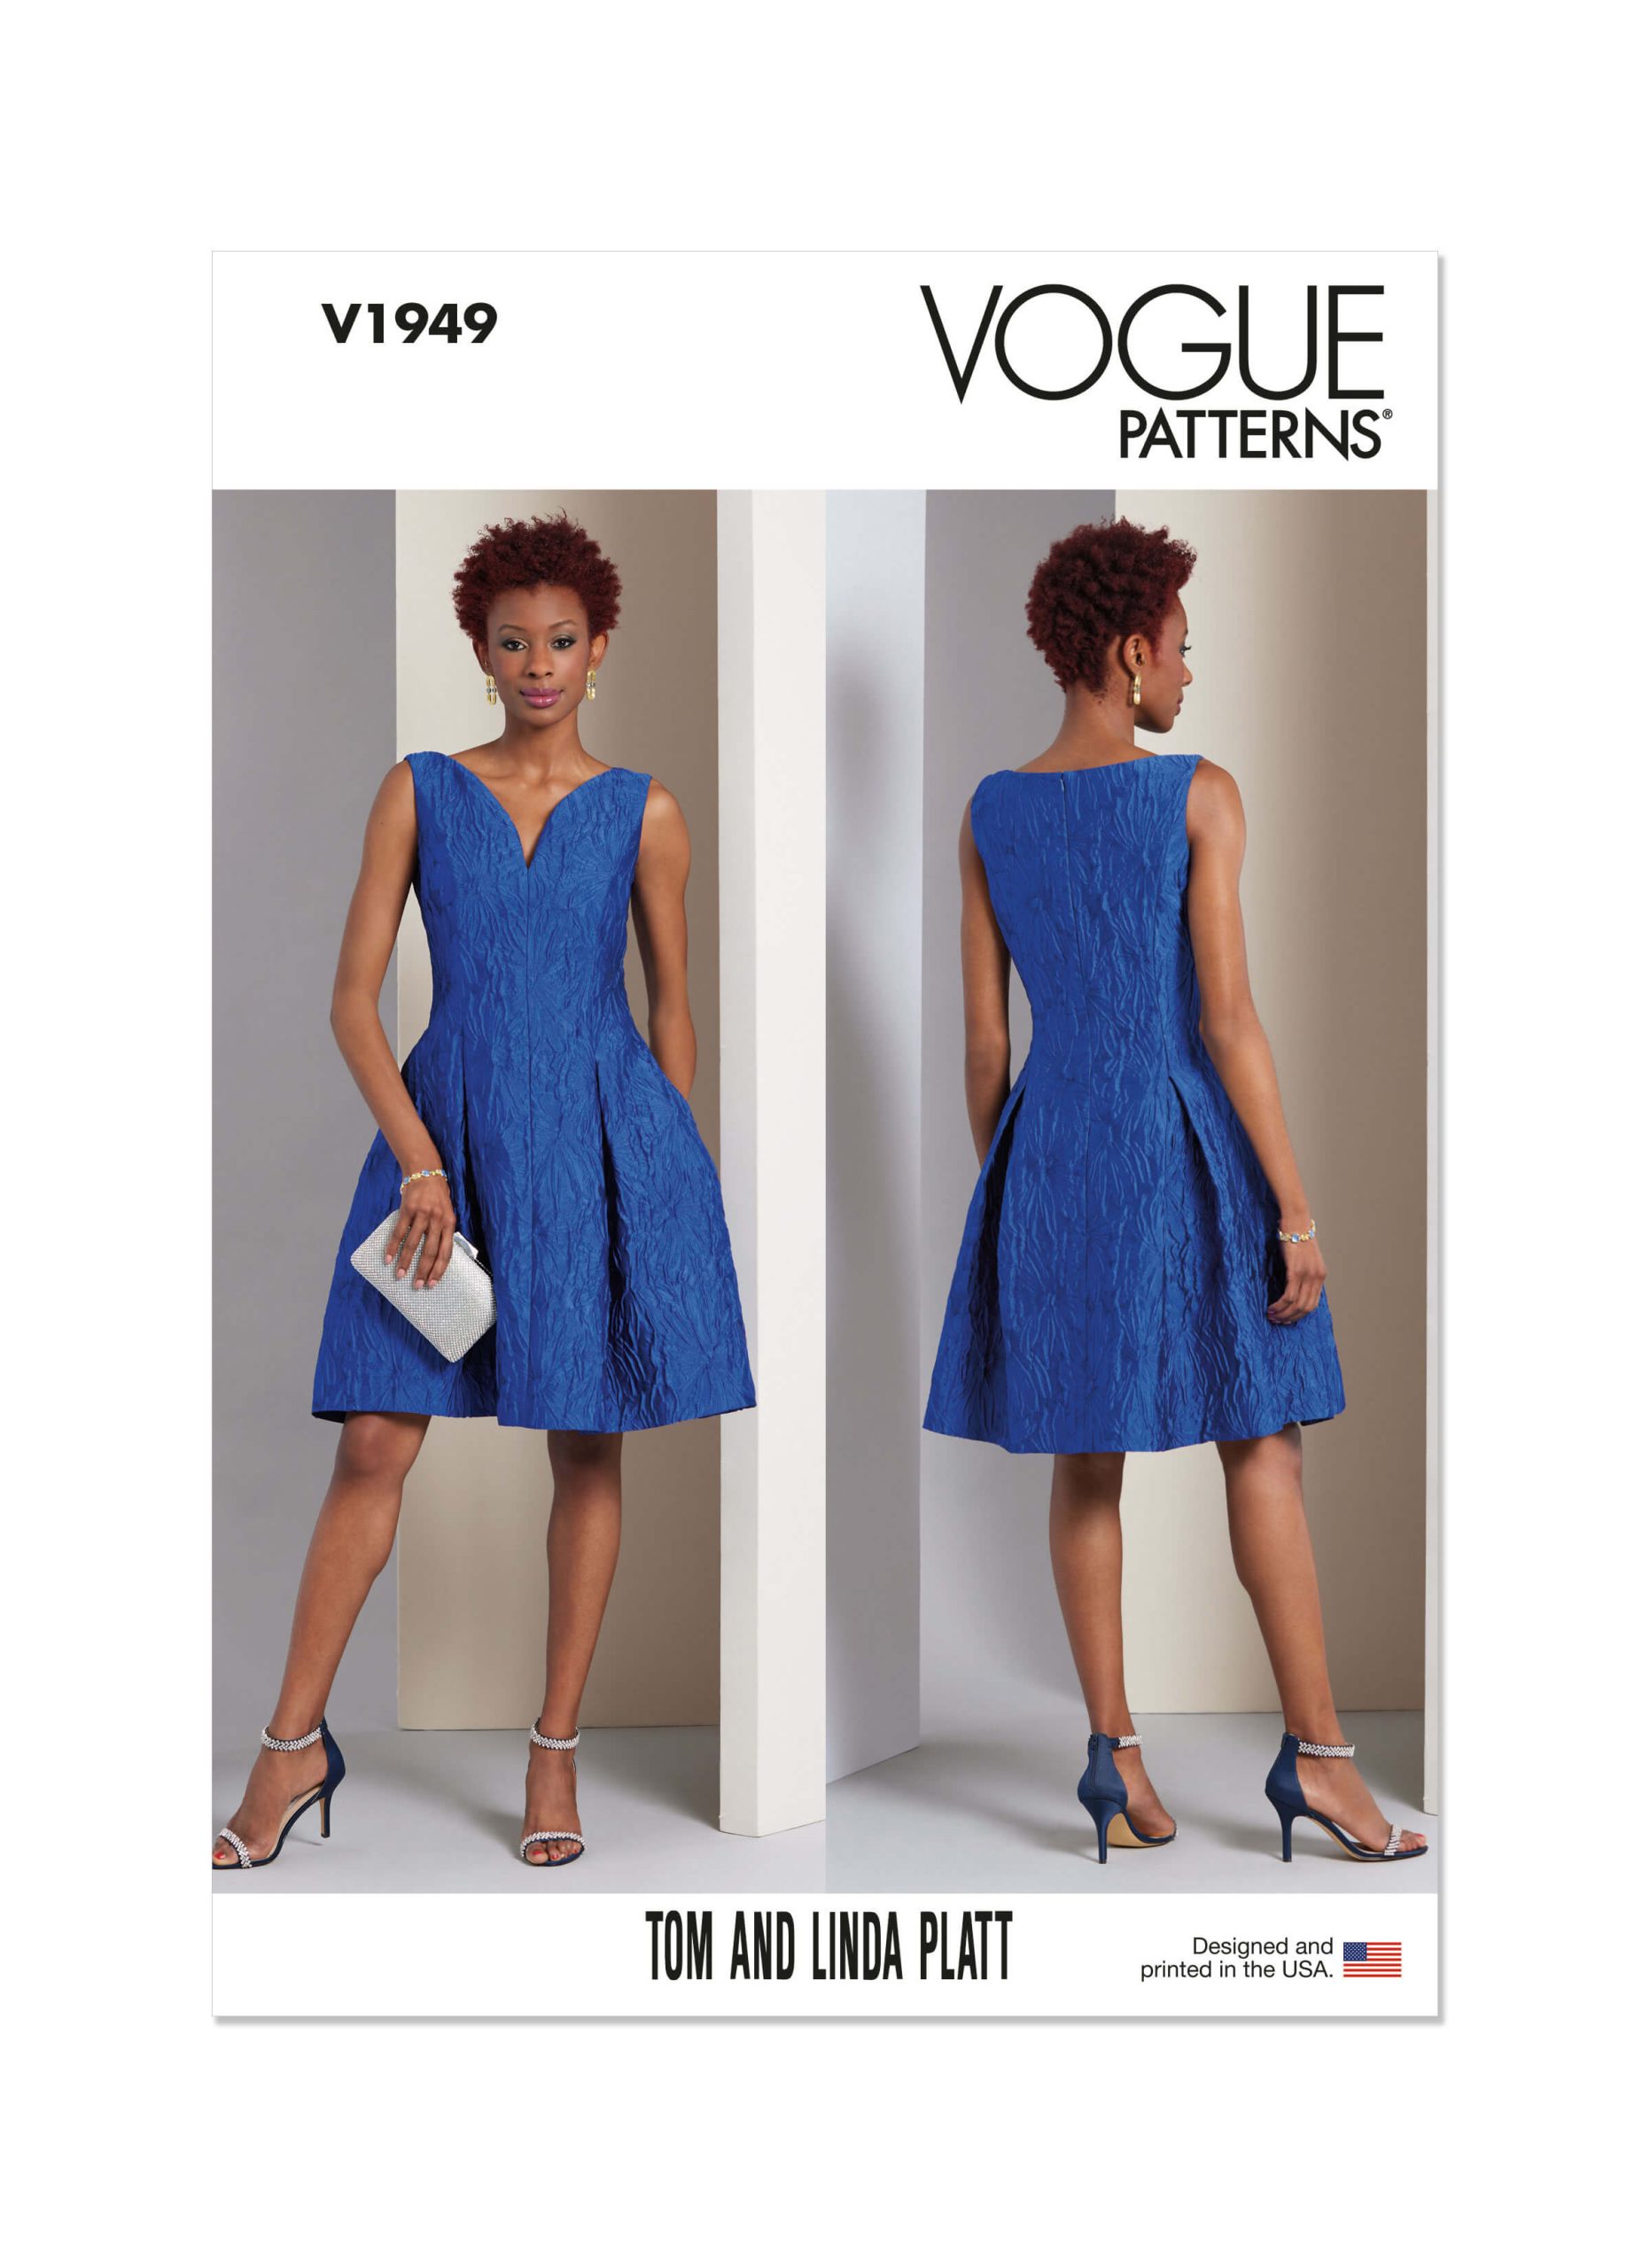 Vogue Patterns V1949 Misses' Dress by Tom & Linda Platt